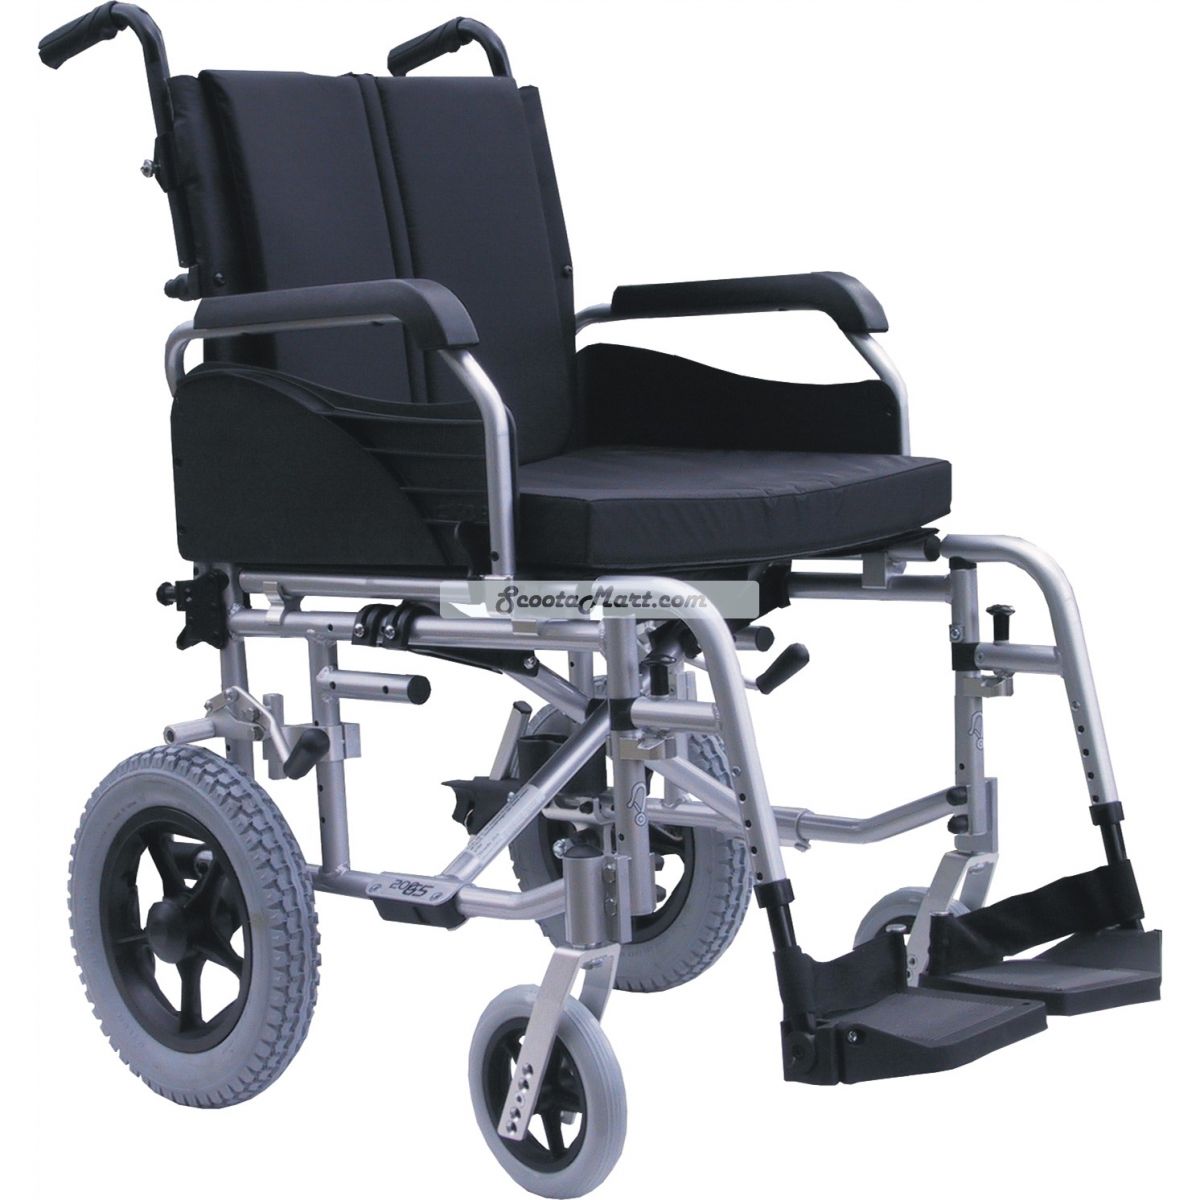 Robo ev Mobility wheelchair